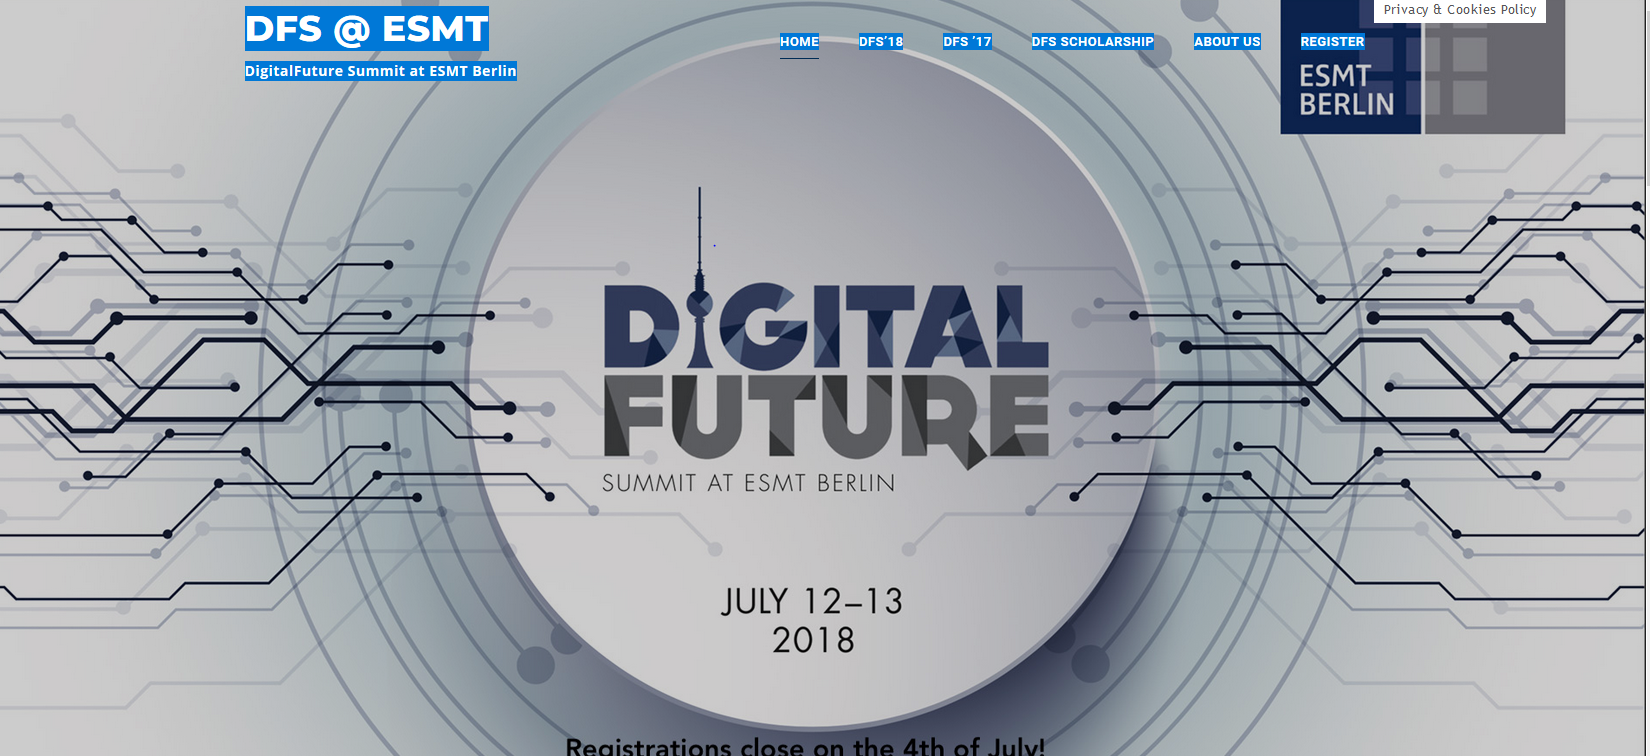 Digital Future Summit website image